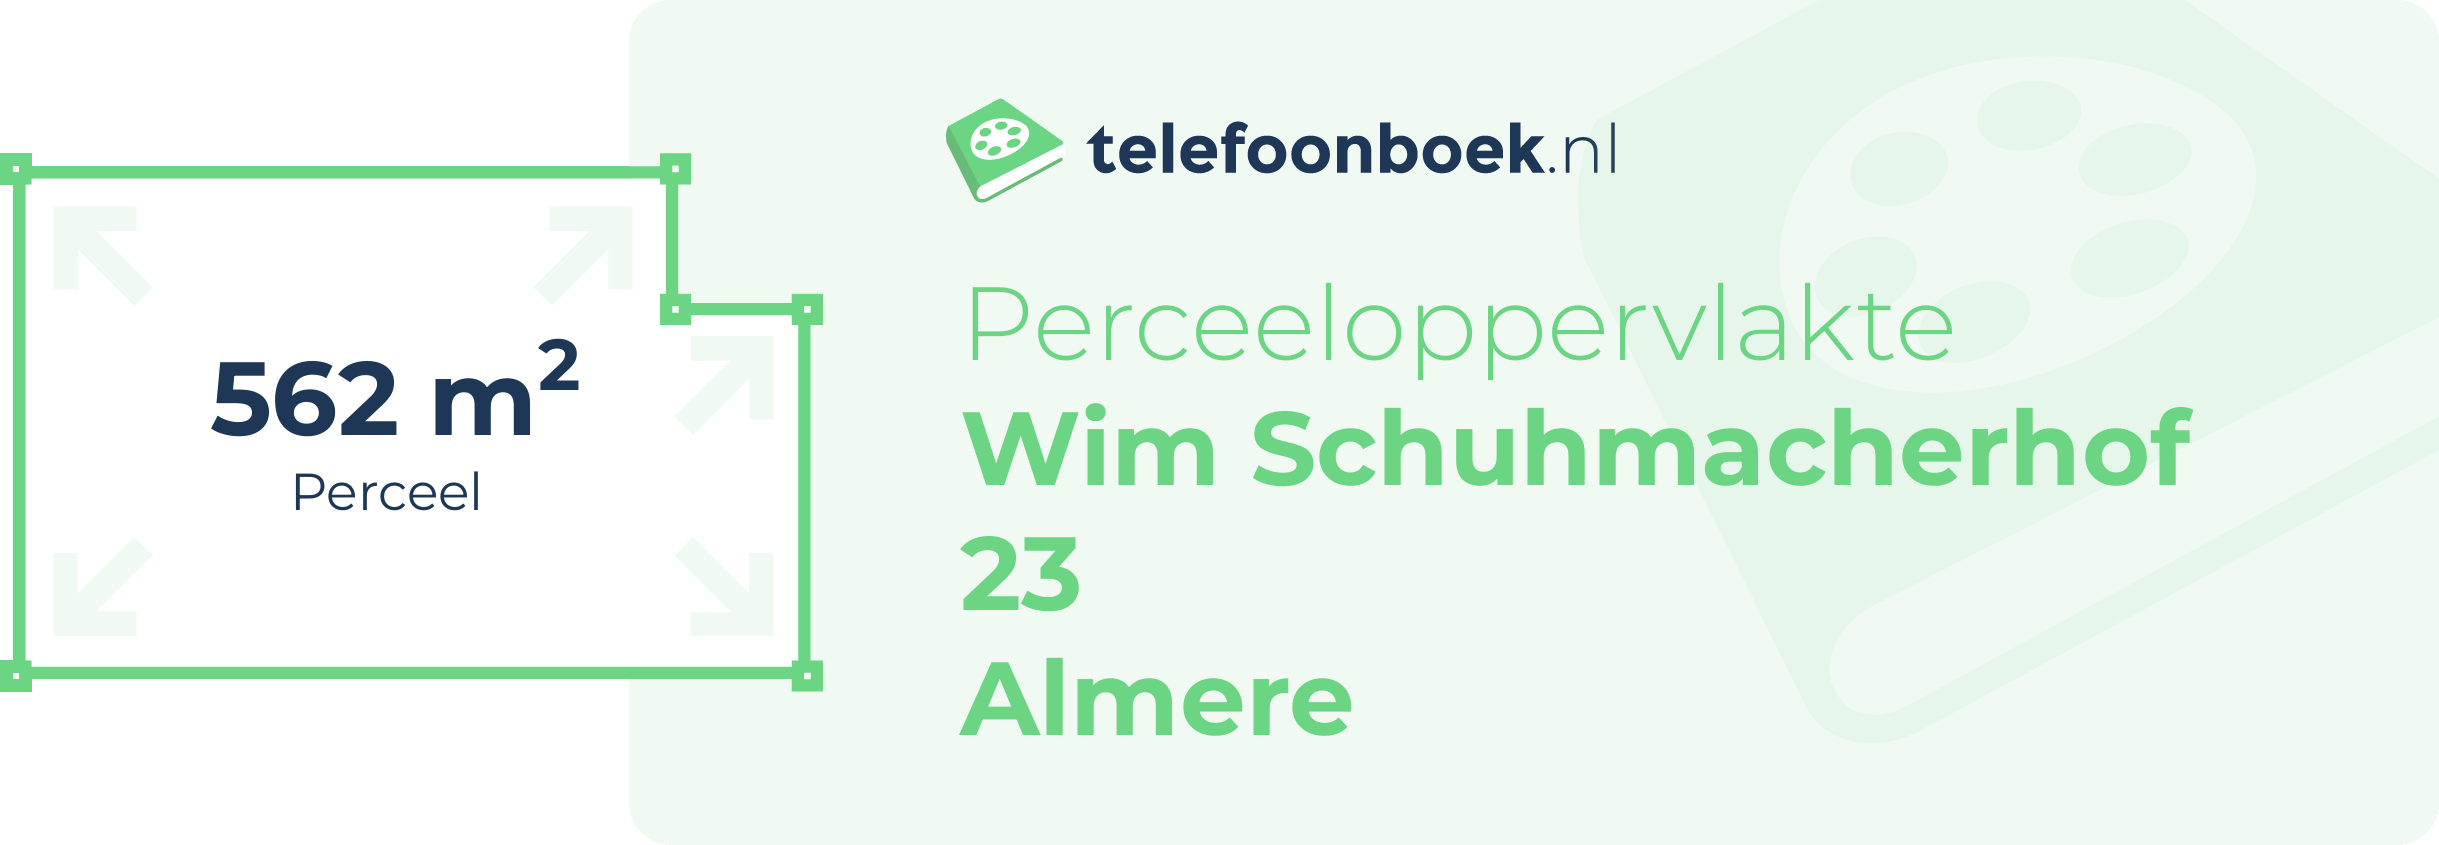 Perceeloppervlakte Wim Schuhmacherhof 23 Almere